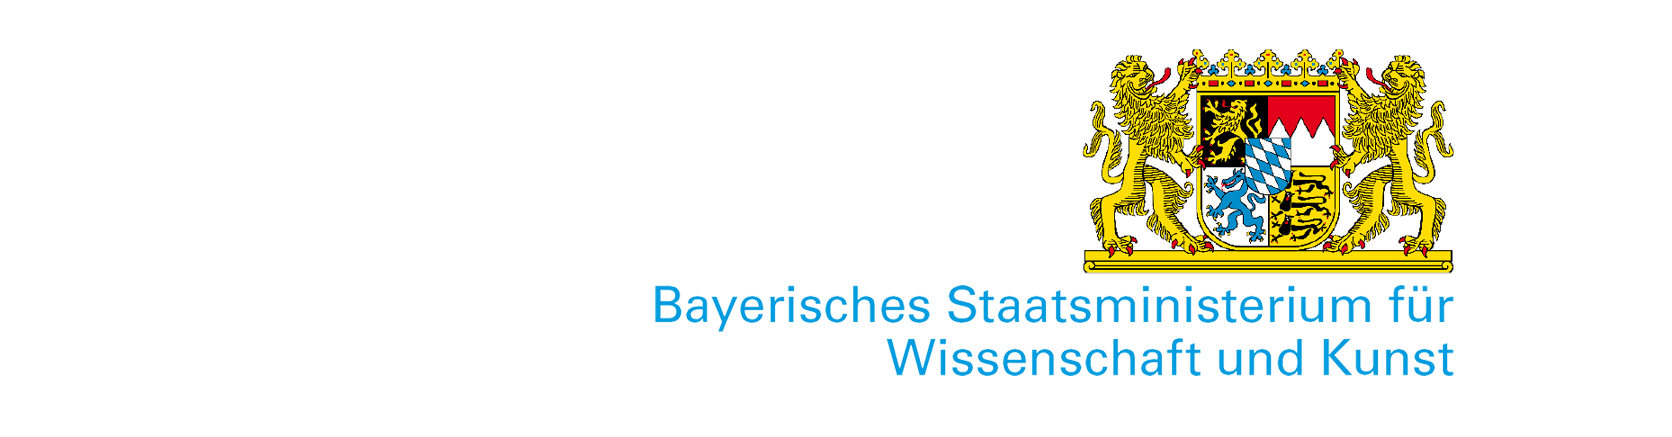 Logo des bayerischen Staatsministerium für Wissenschaft und Kunst